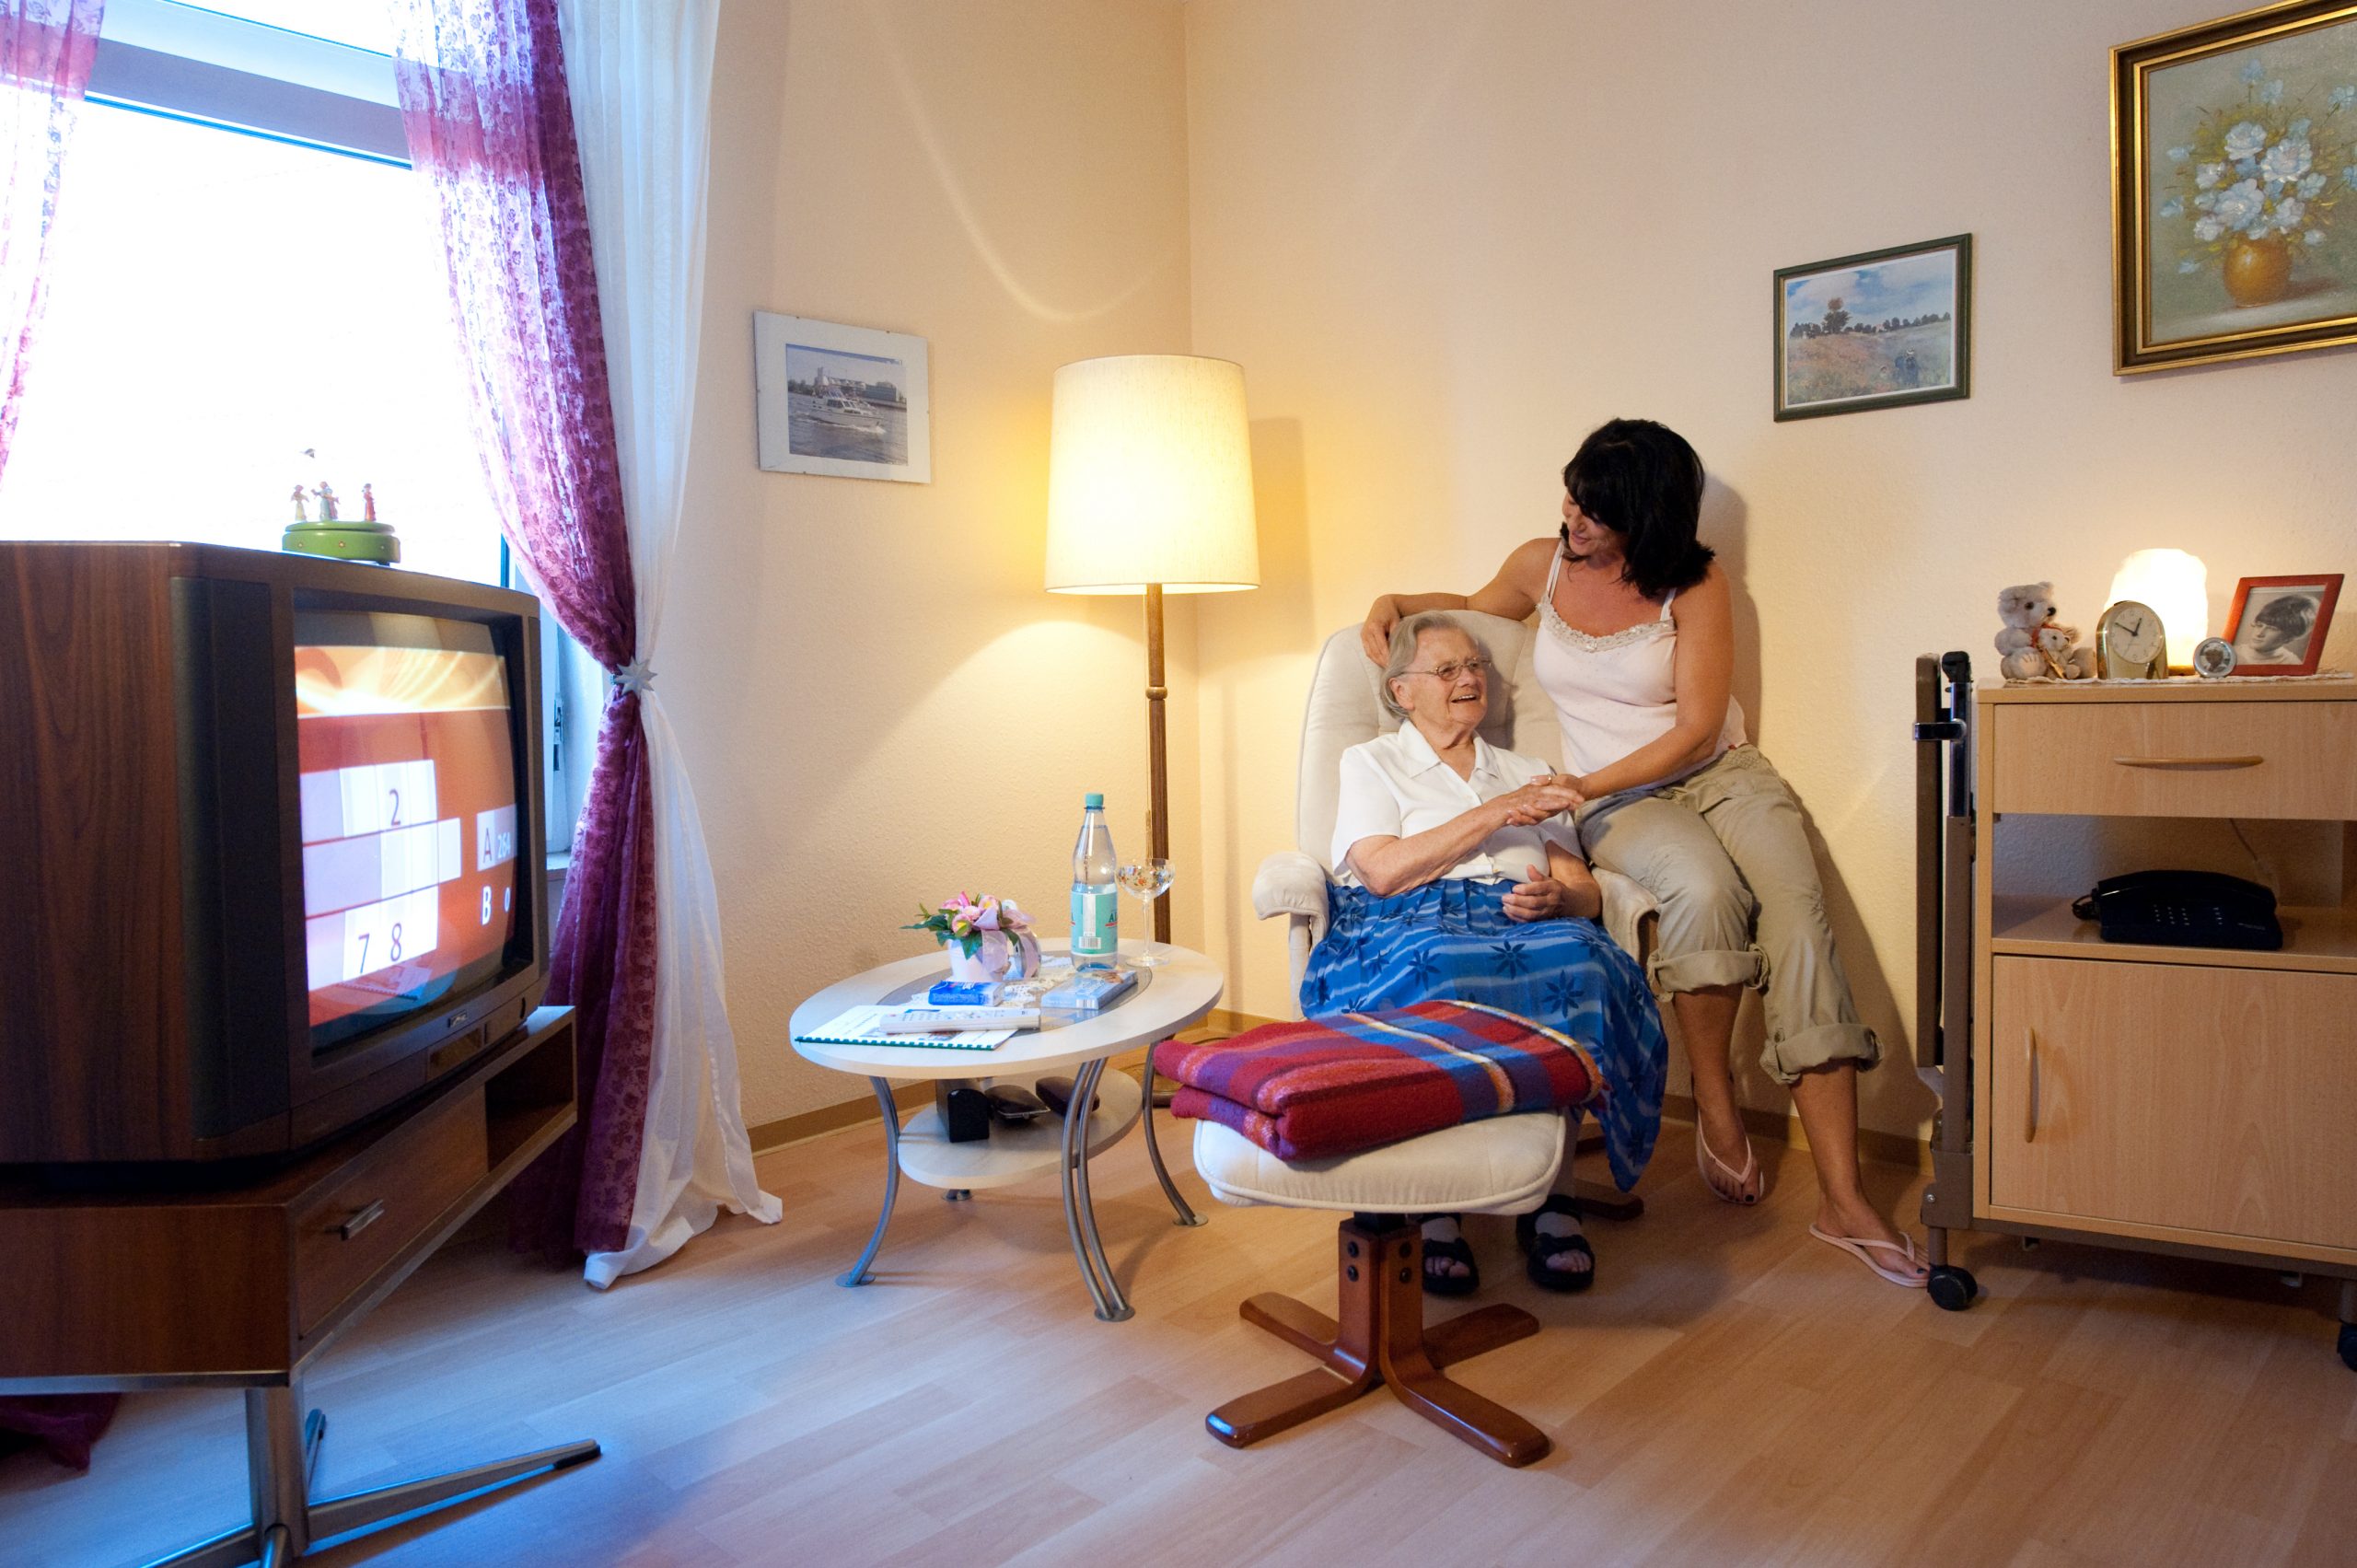 Besuch der Mutter im Zimmer - Altenheime Apel betreiben 5 Einrichtungen für Altenpflege & Seniorenbetreuung in Geesthacht, nähe Hamburg